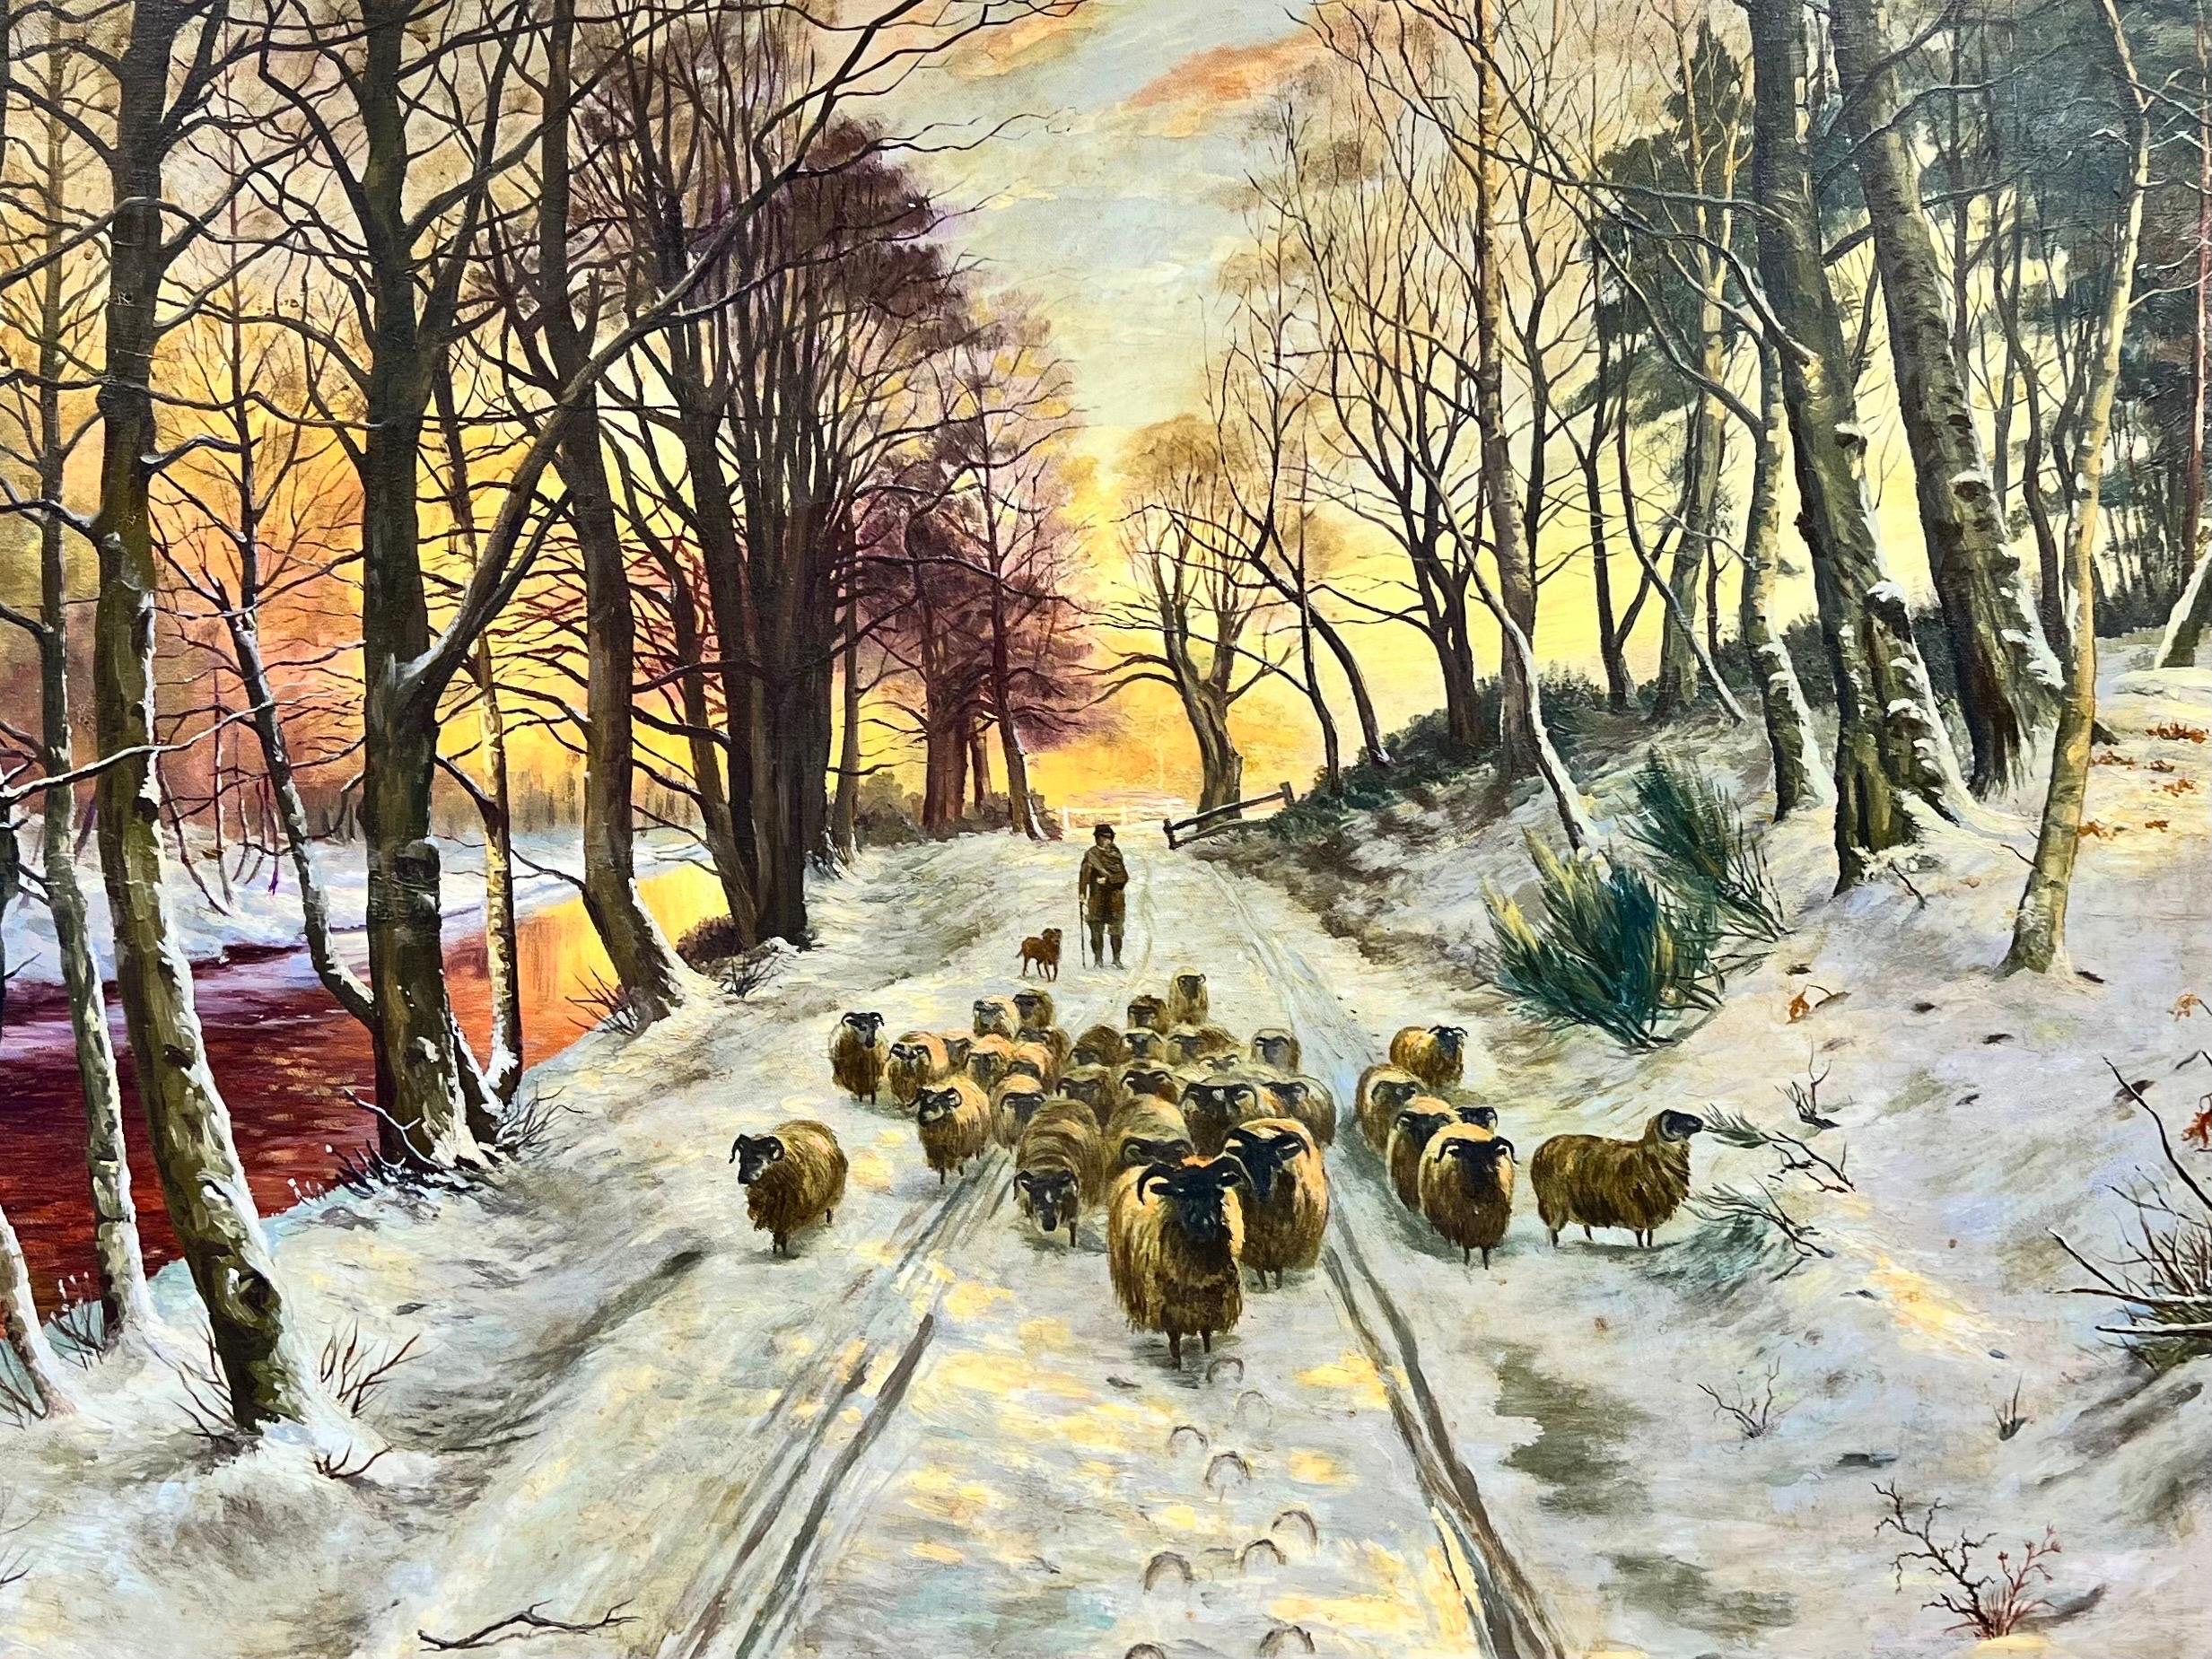 Grande peinture écossaise signée de moutons dans un paysage de coucher de soleil en hiver